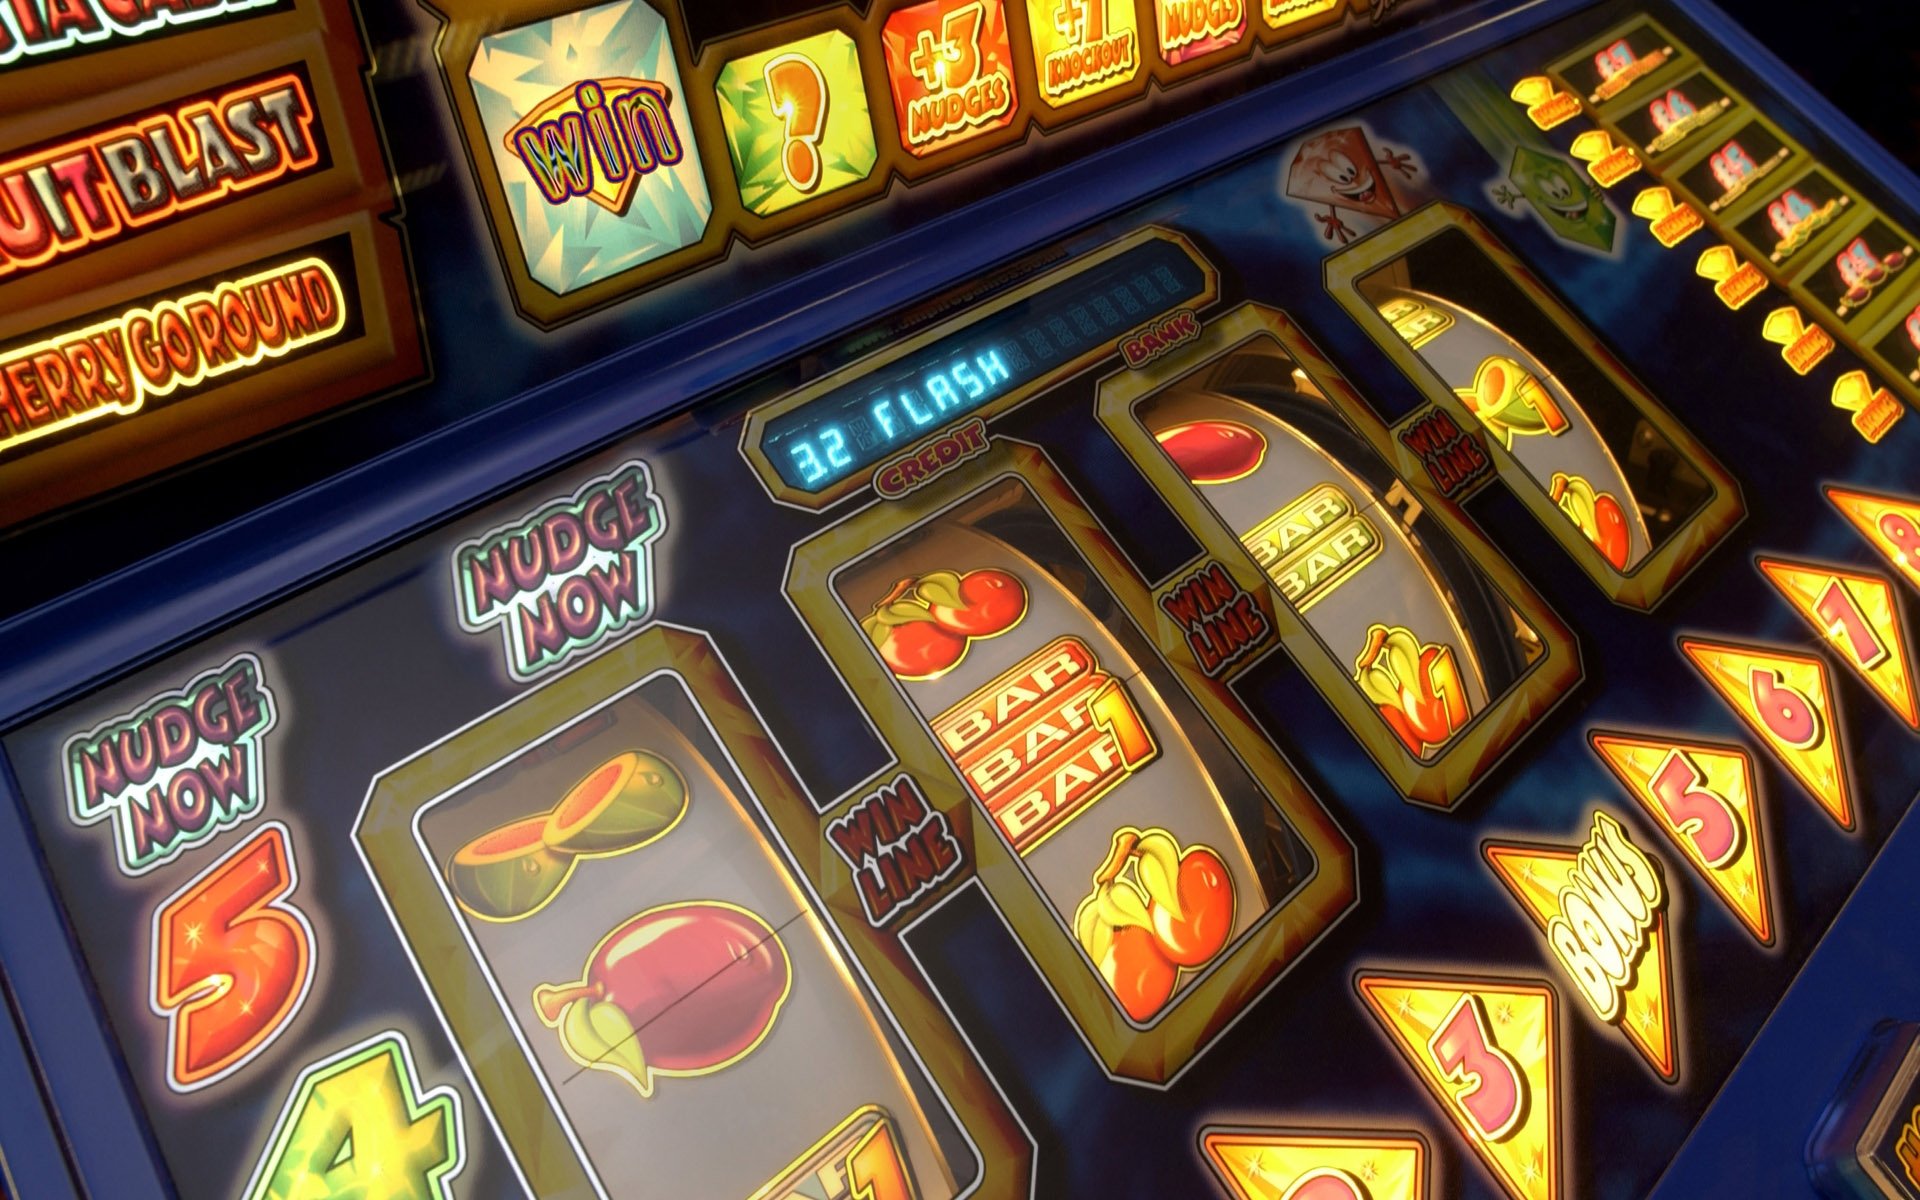 Slot machine games online